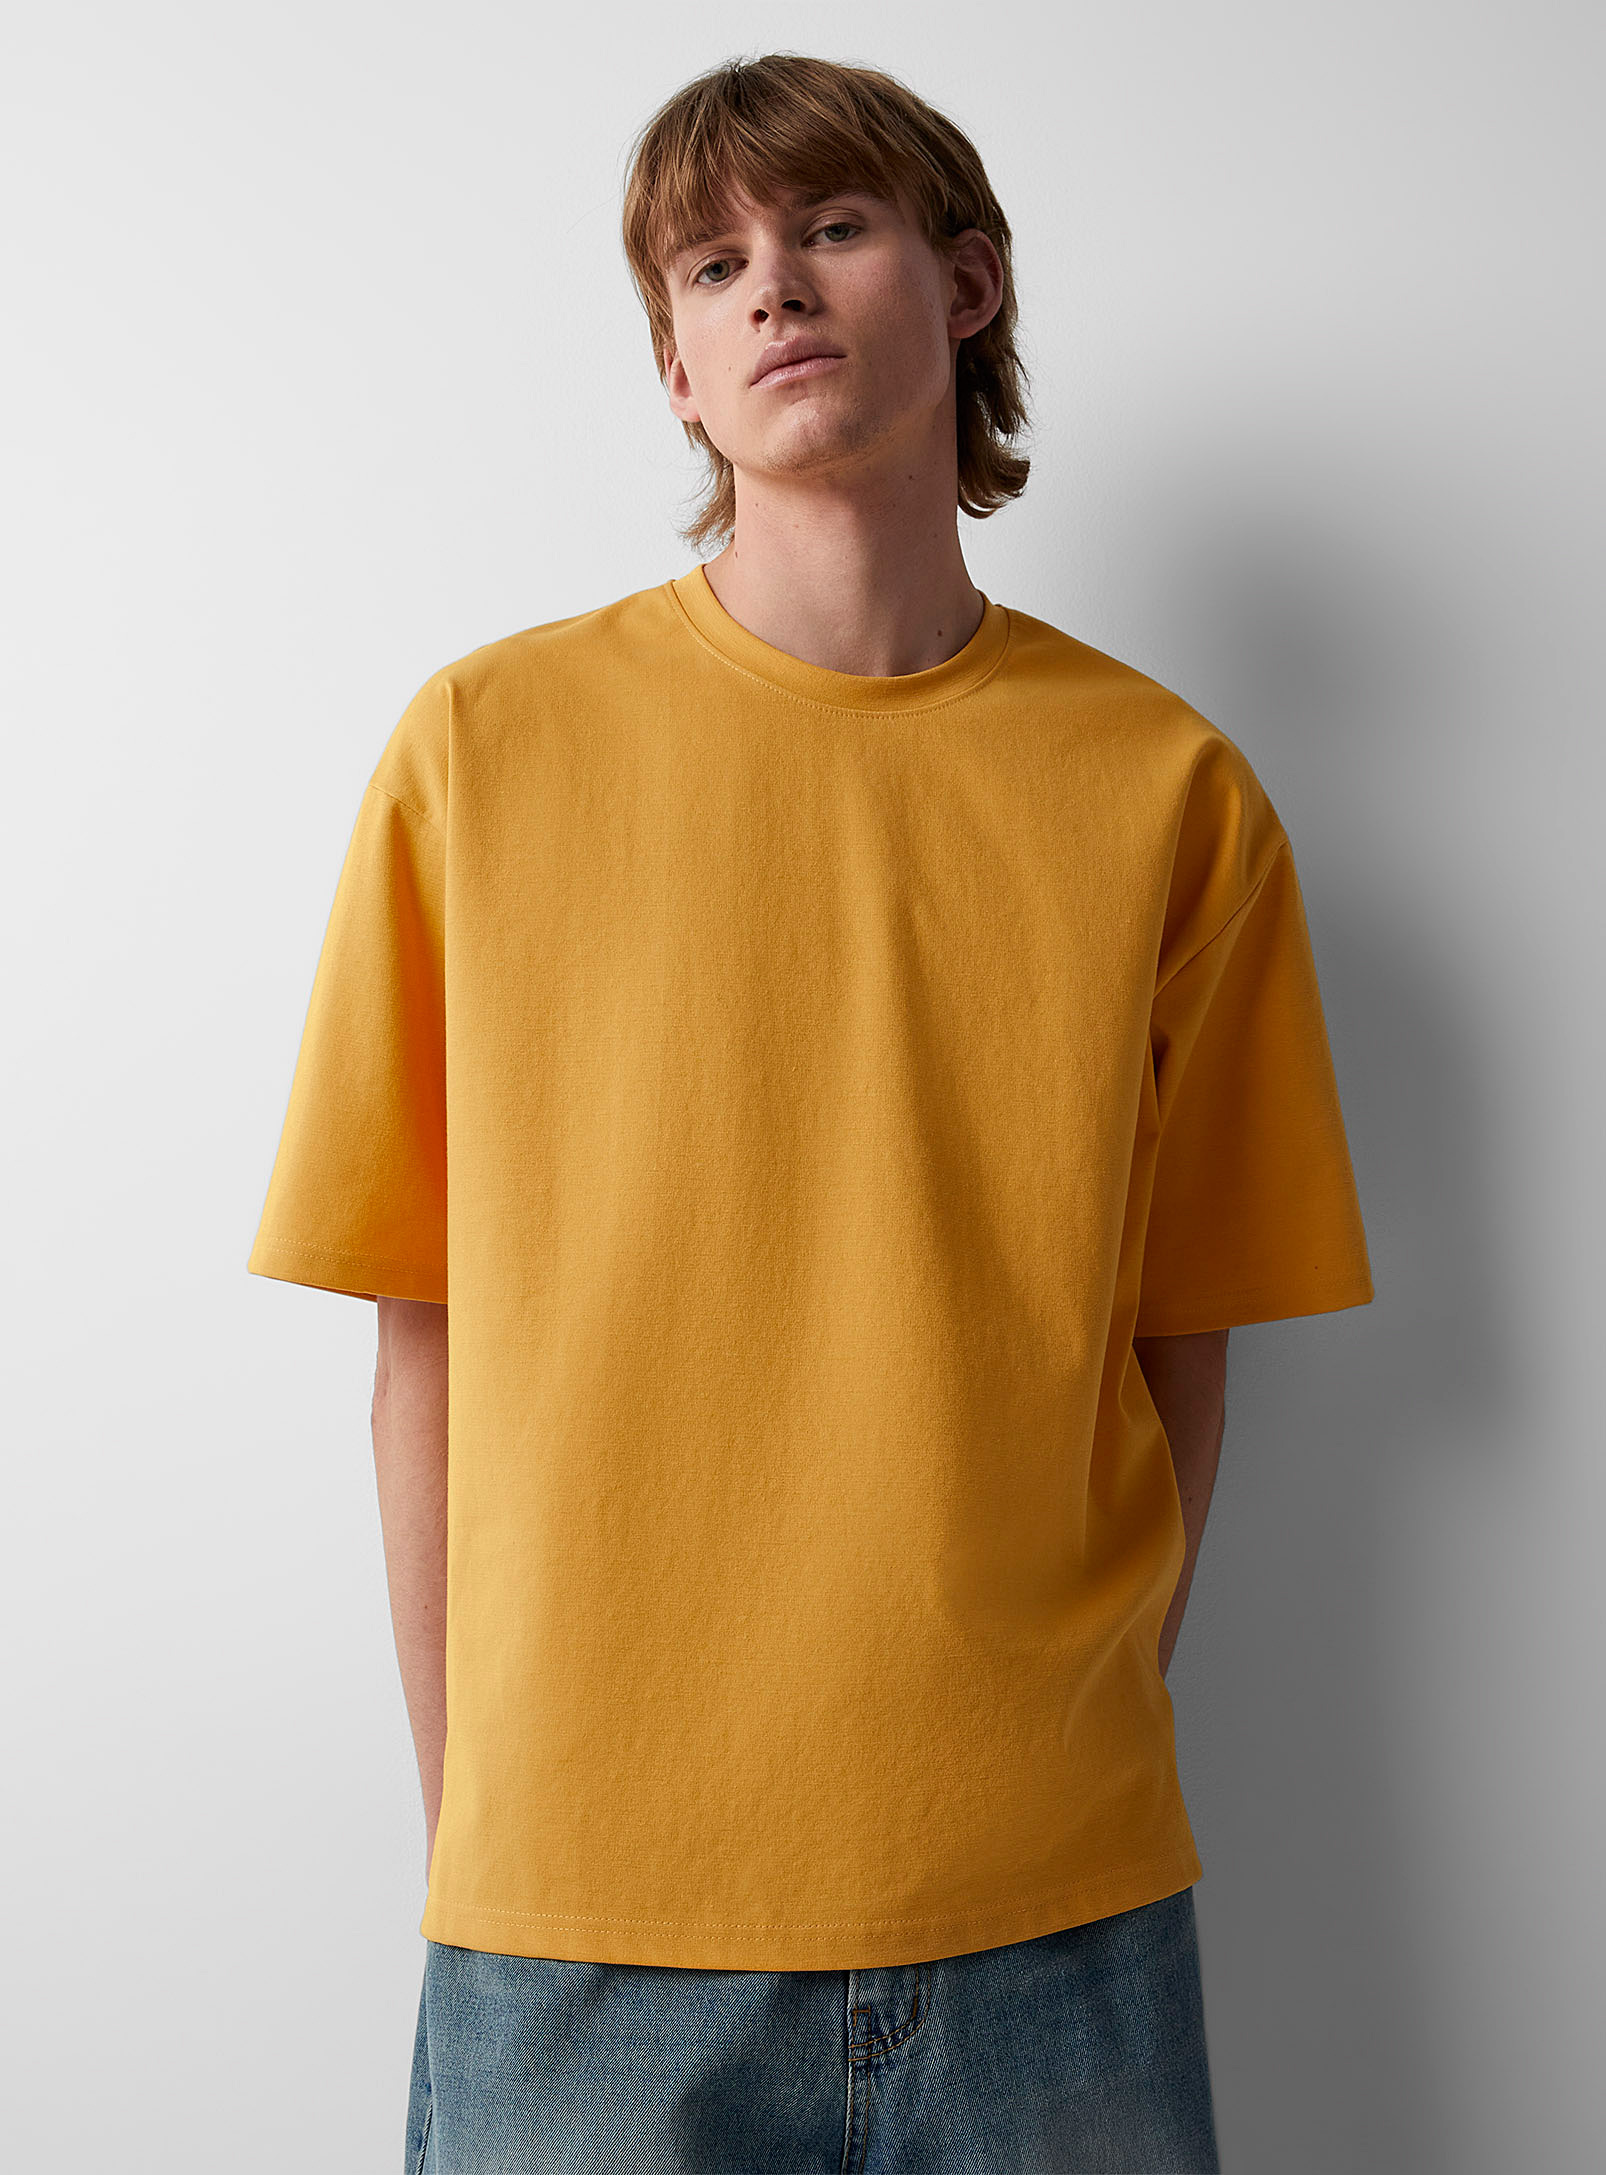 Djab Loose Boxy T-shirt In Medium Yellow